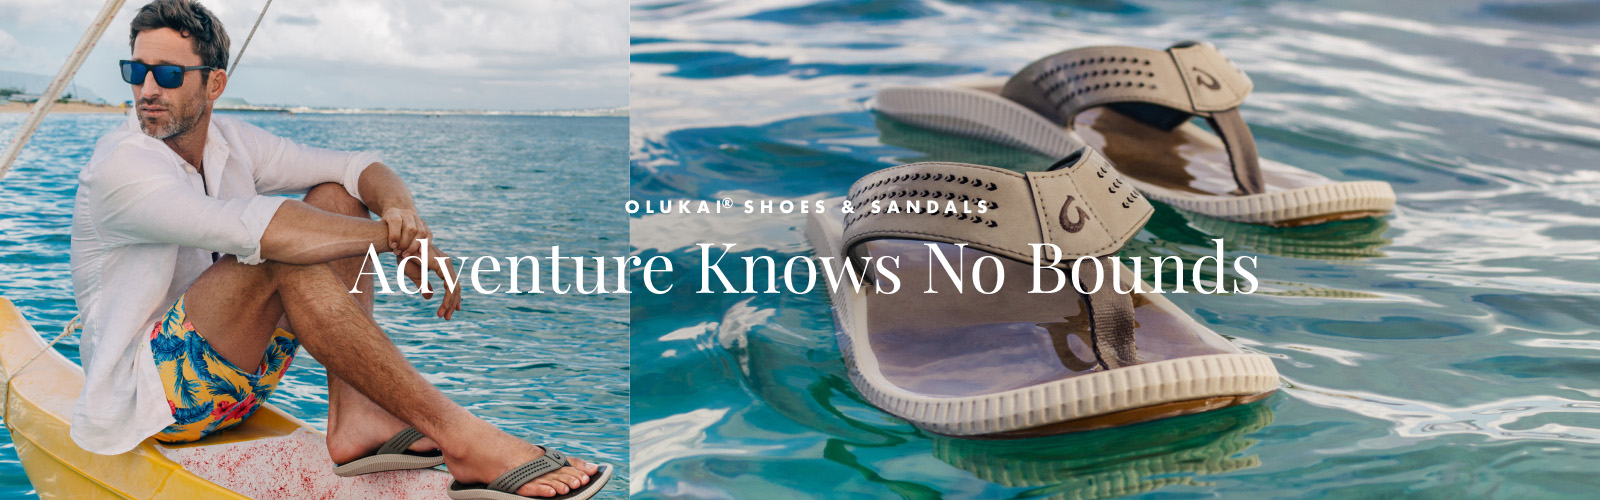 OluKai® Shoes & Sandals - Adventure Know No Bounds